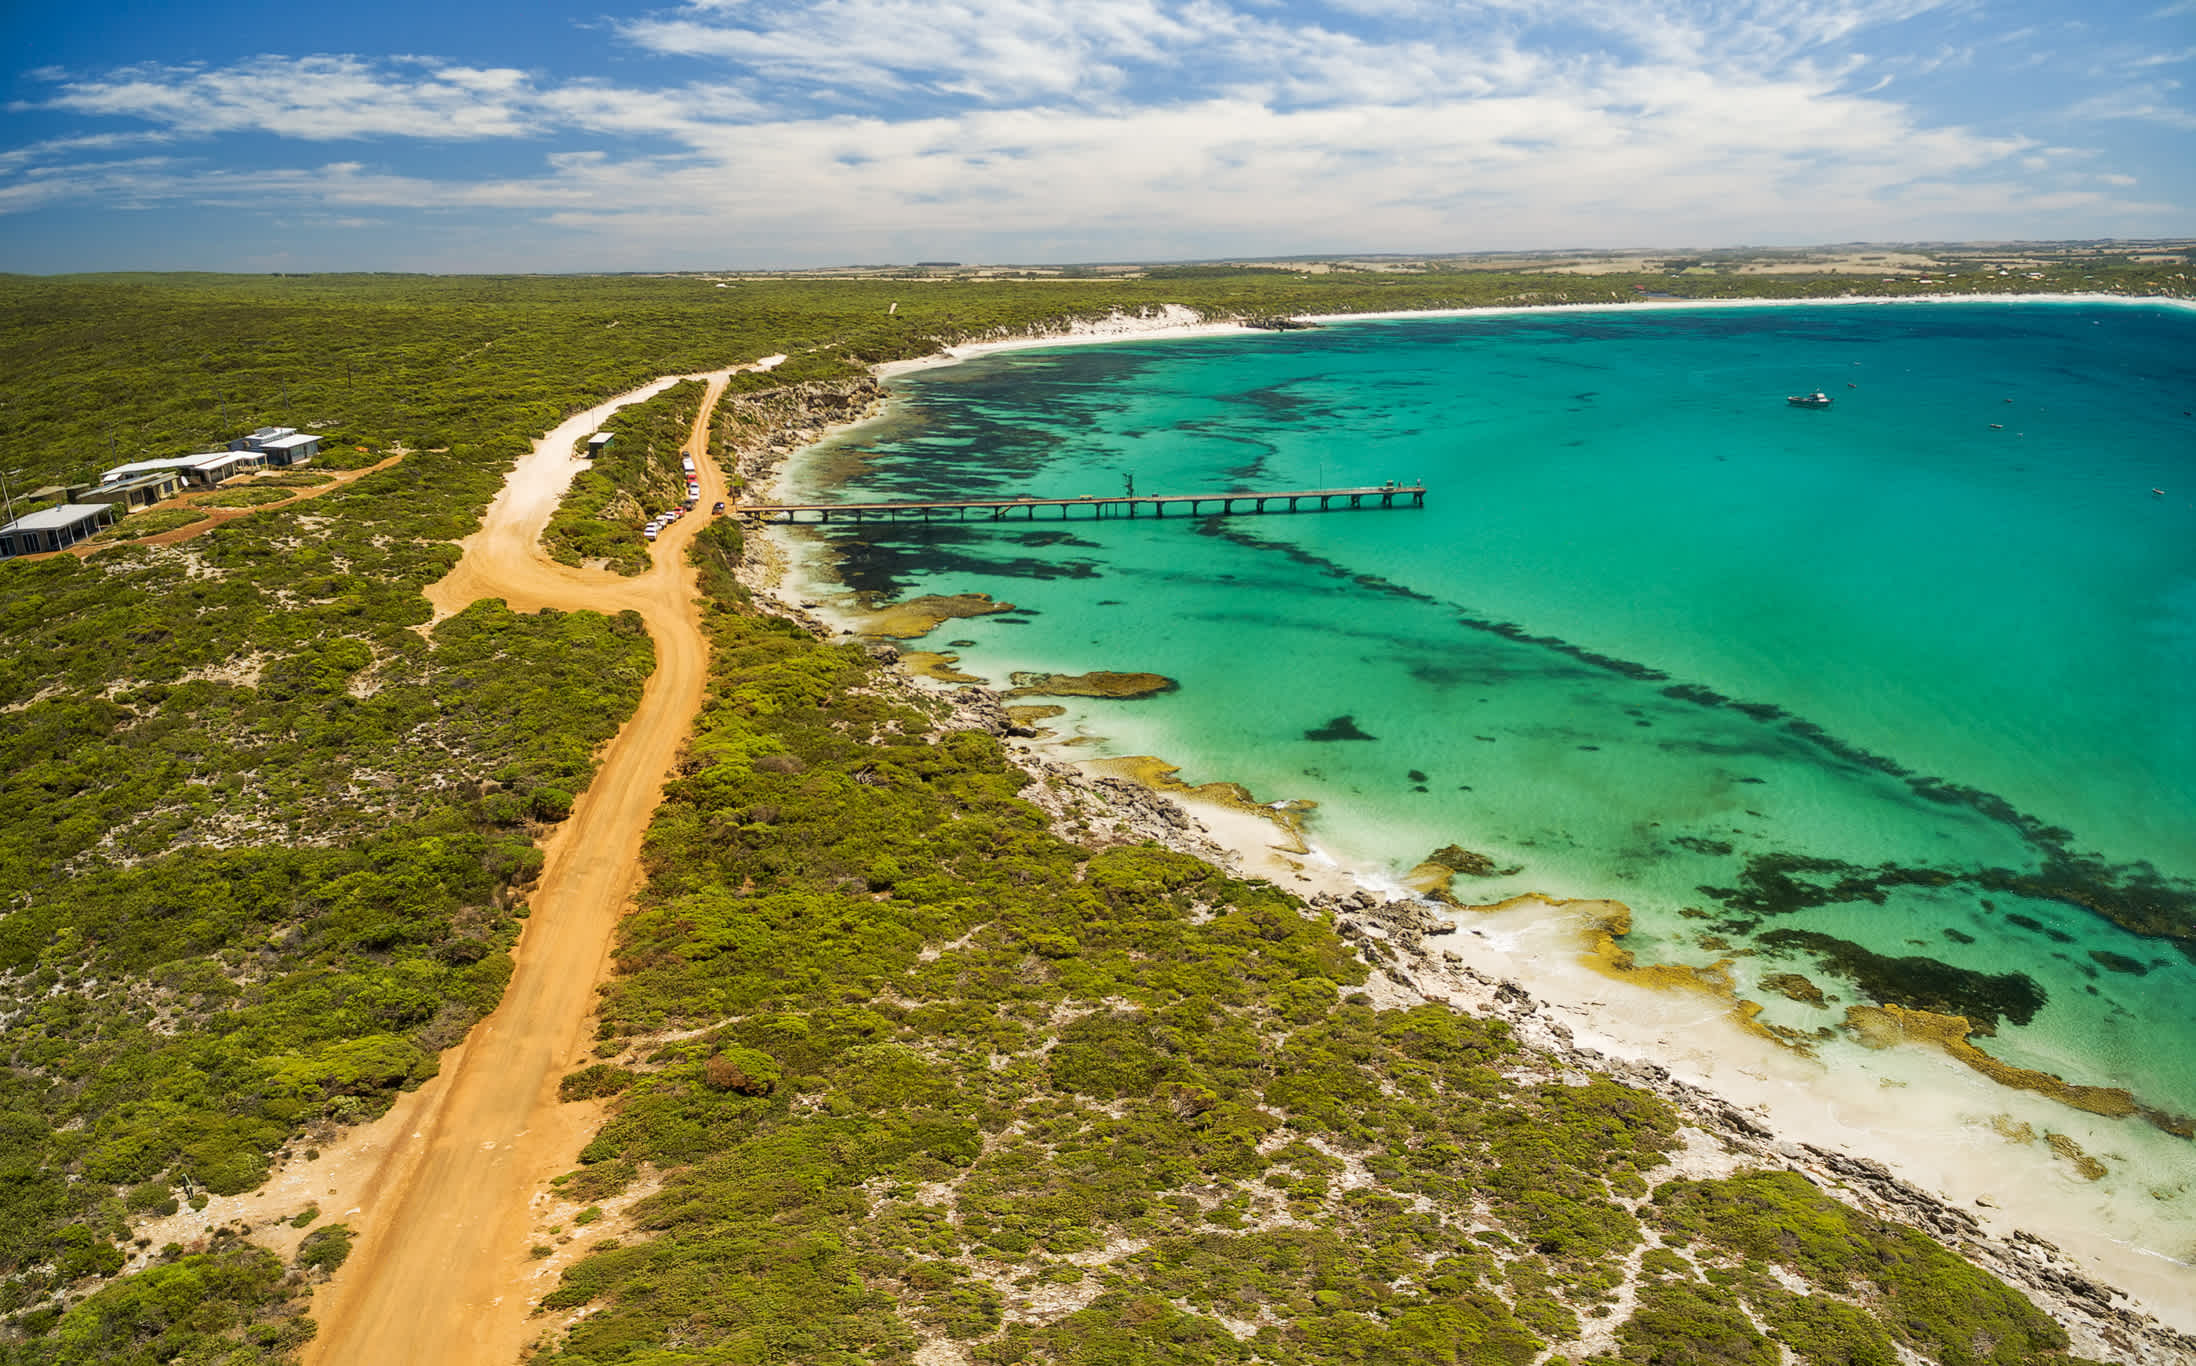 Vue aérienne de la jetée de Vivonne Bay entourée de végétation et d'eau turquoise, Kangaroo Island, Australie du Sud.